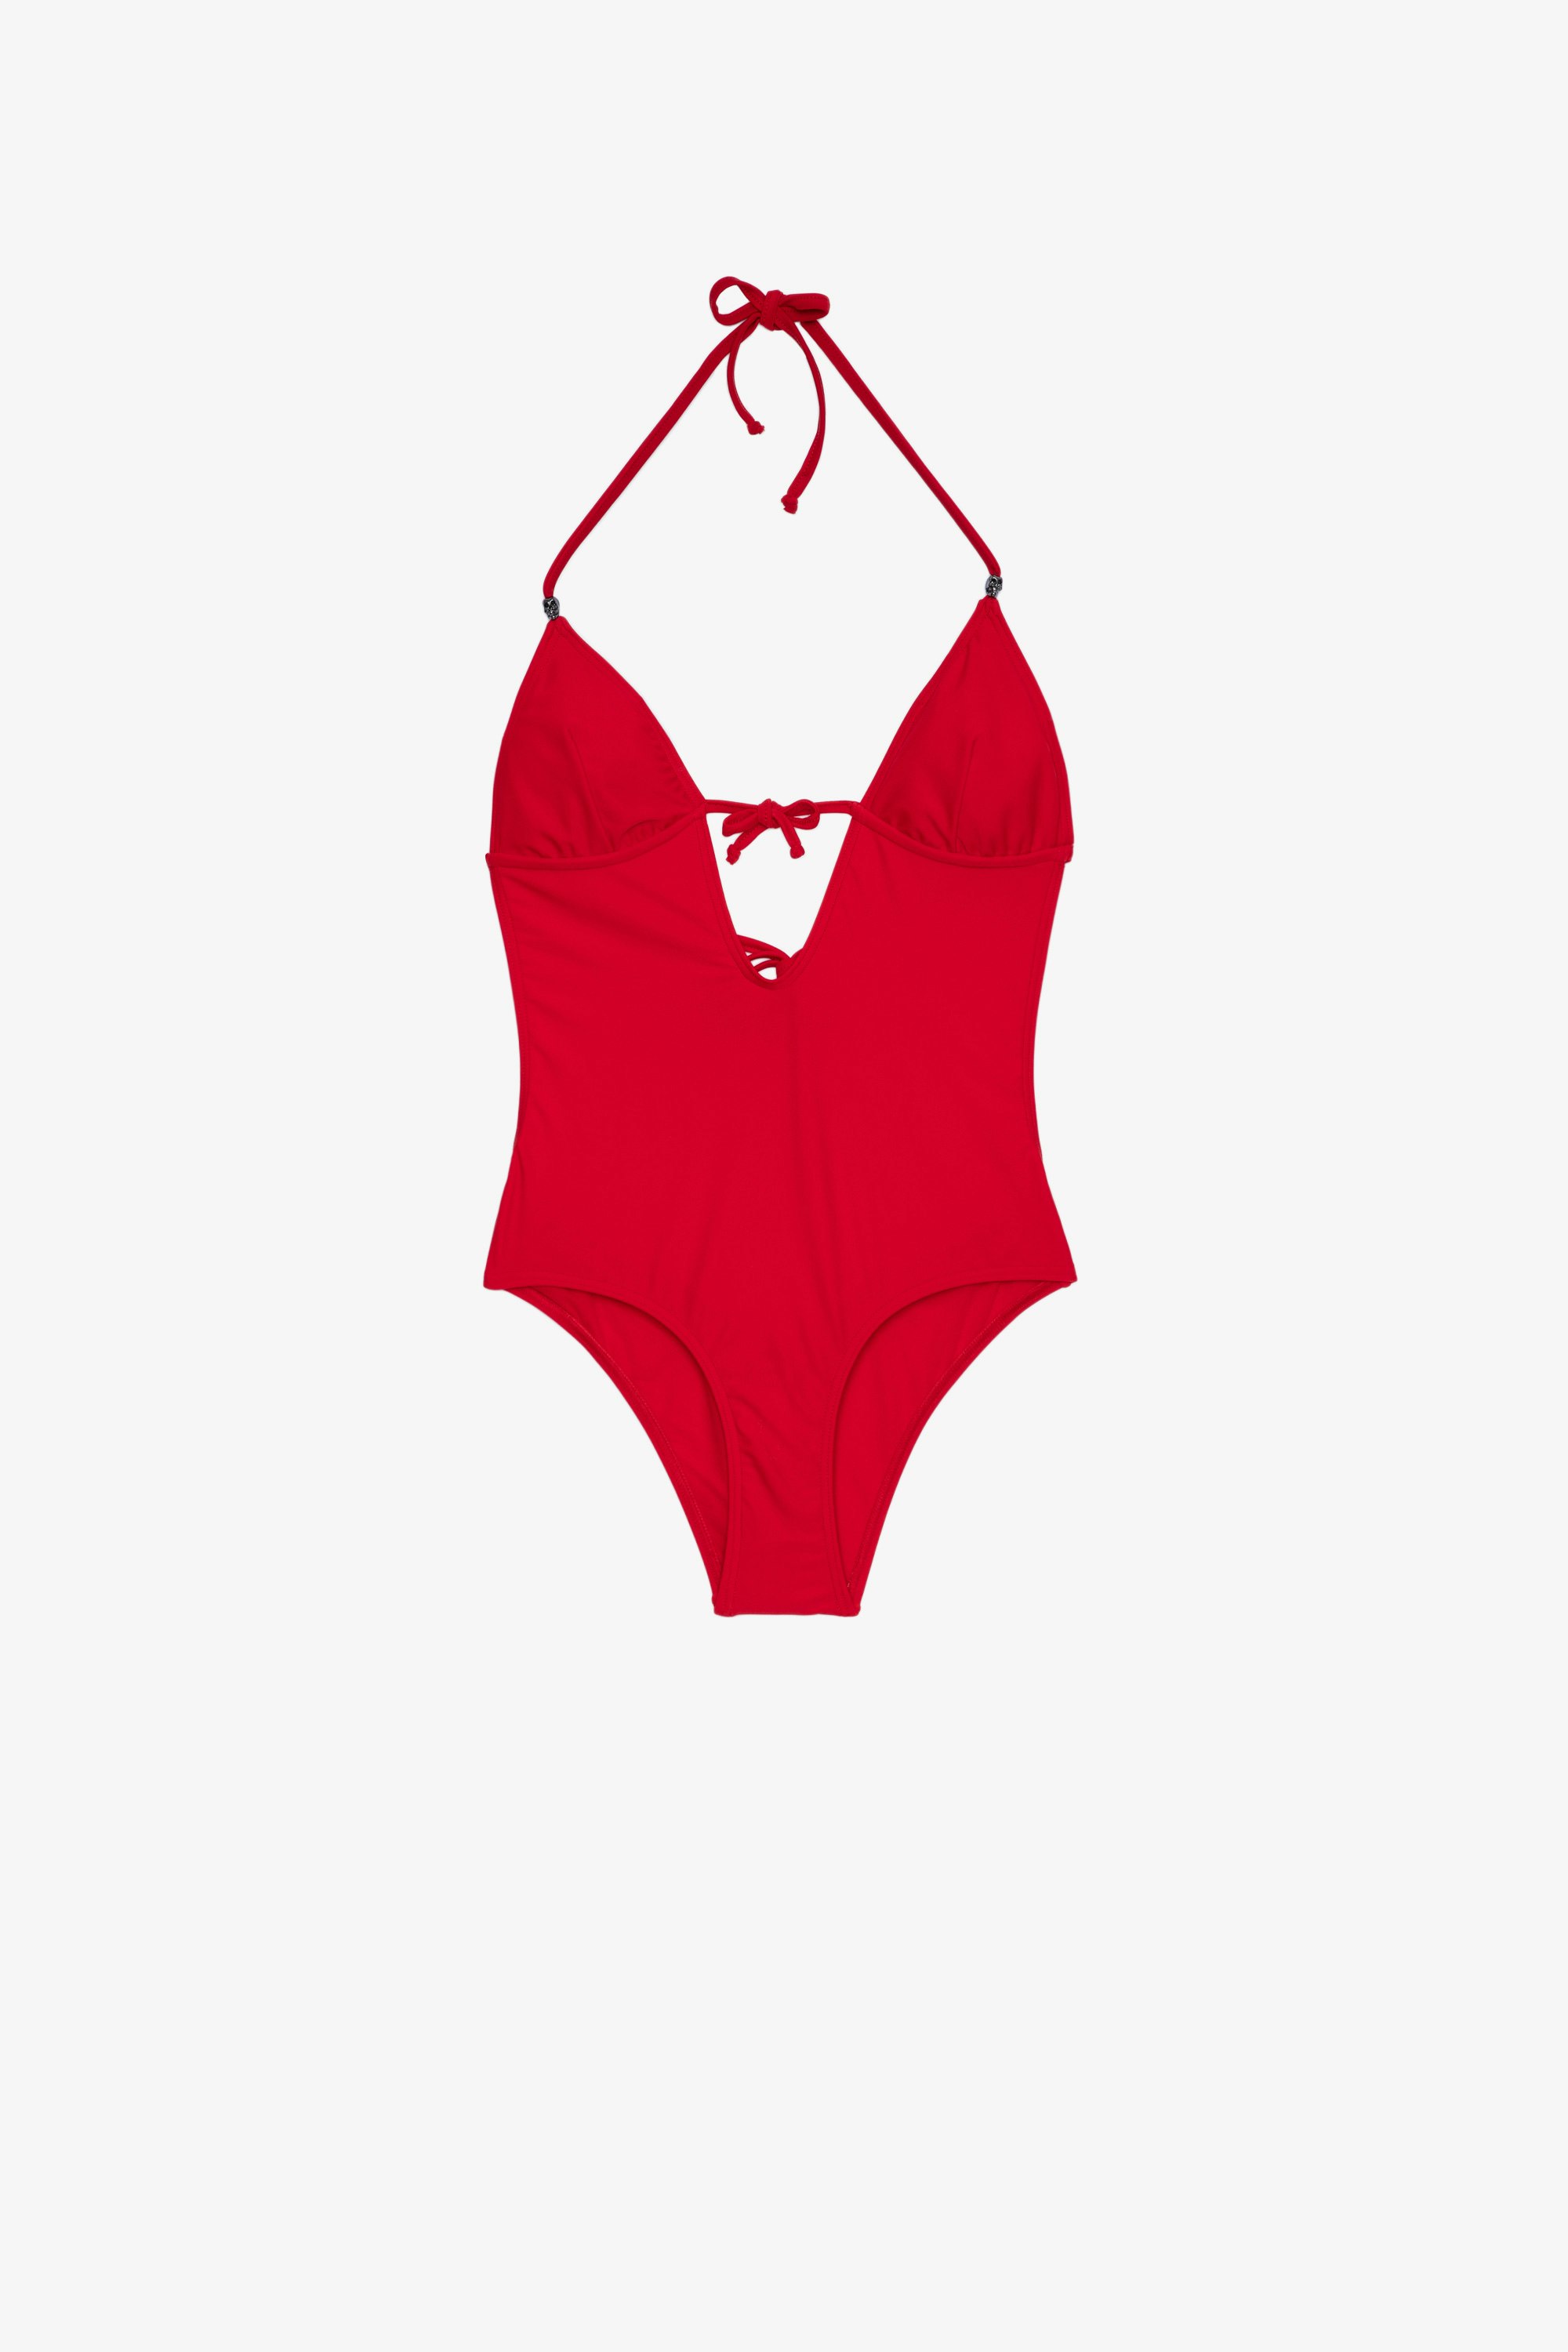 Skull swimsuit 1-piece women's swimsuit in red